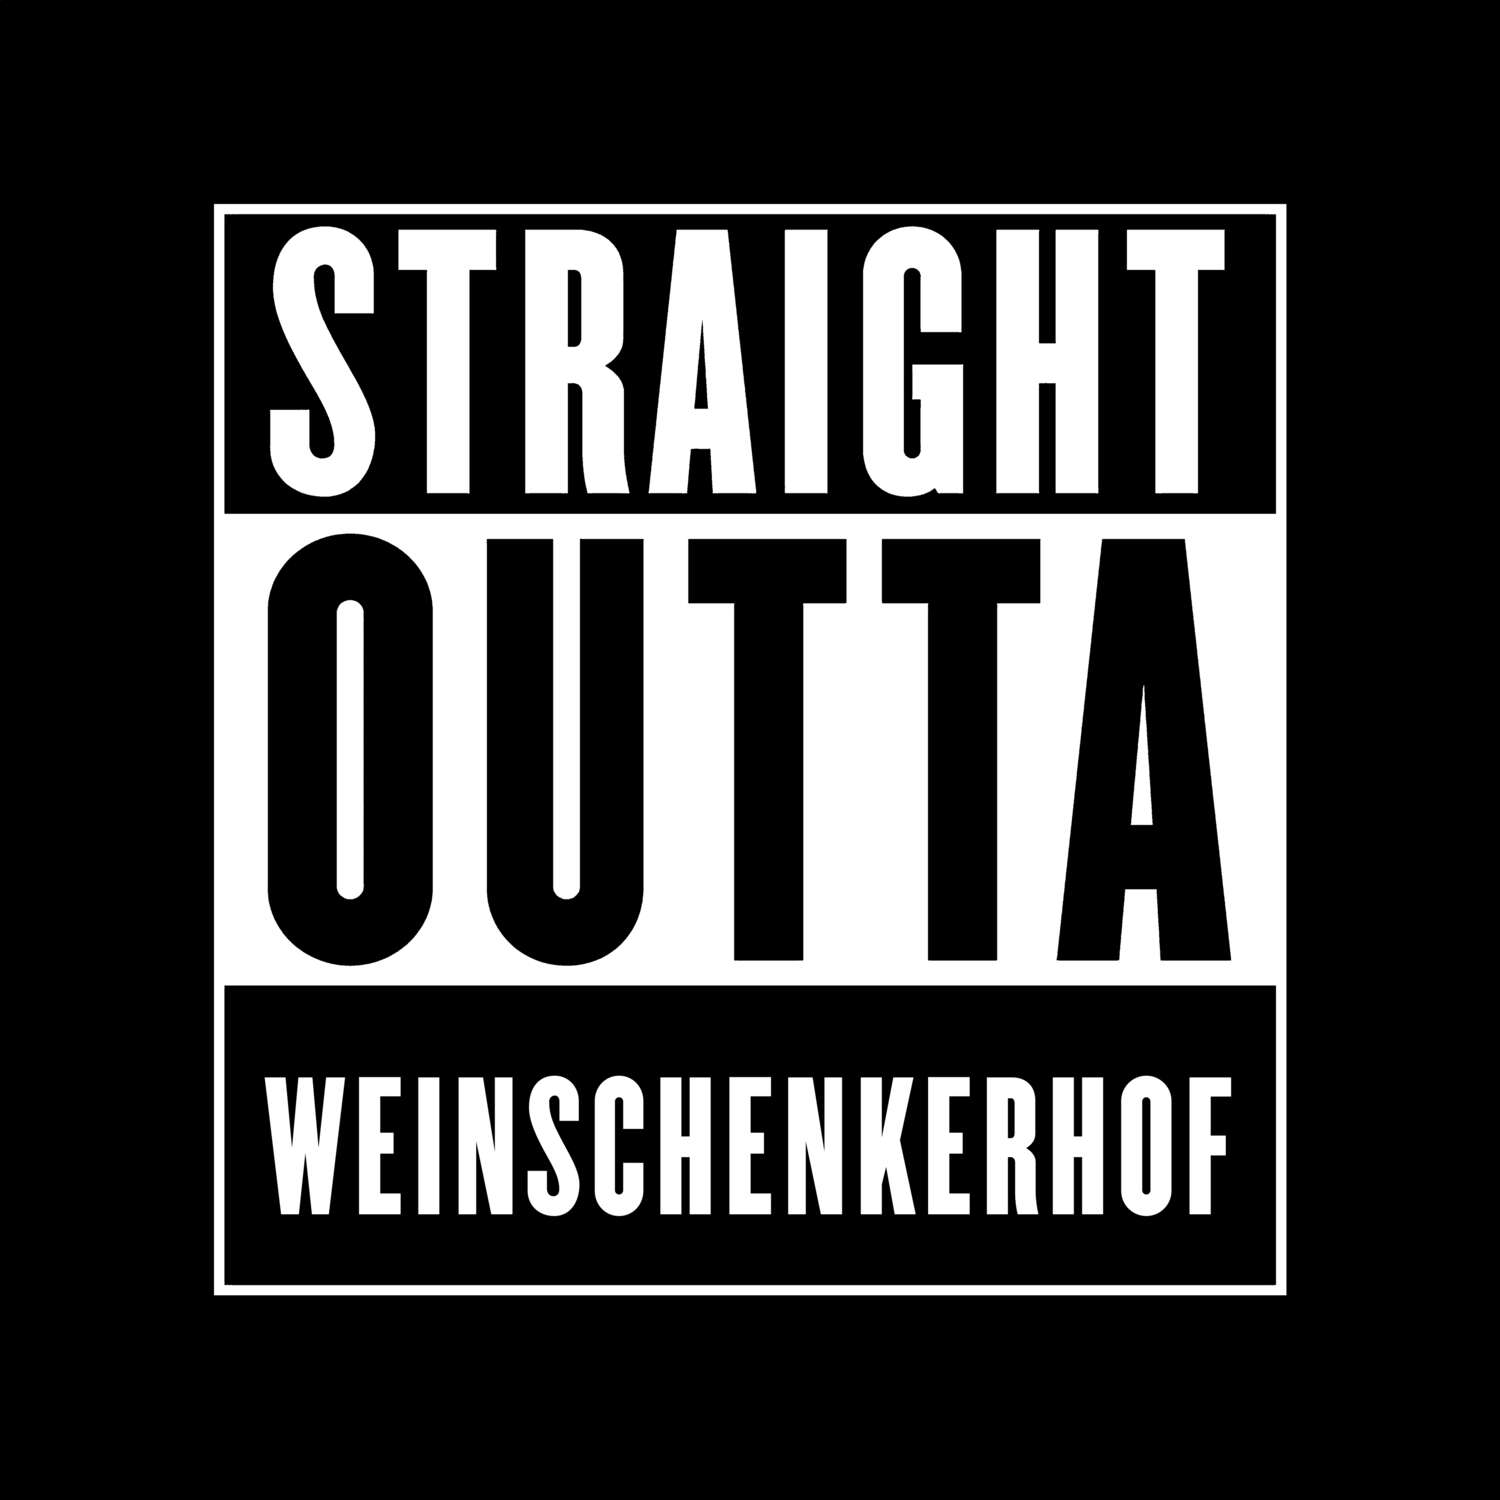 Weinschenkerhof T-Shirt »Straight Outta«